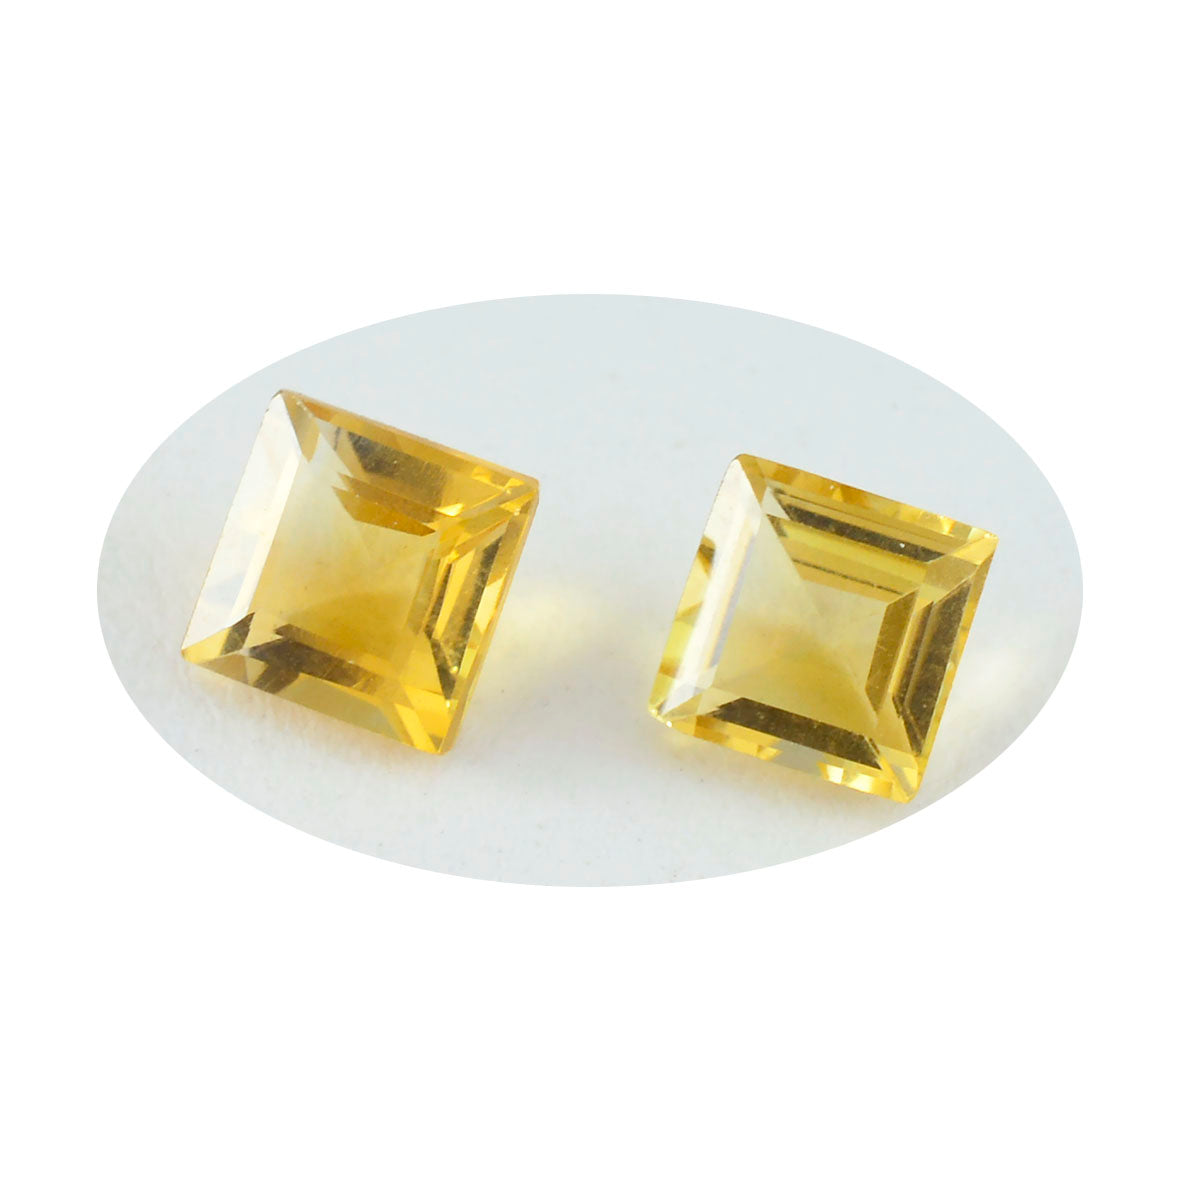 Riyogems 1 Stück natürlicher gelber Citrin, facettiert, 9 x 9 mm, quadratische Form, gut aussehender, hochwertiger loser Stein